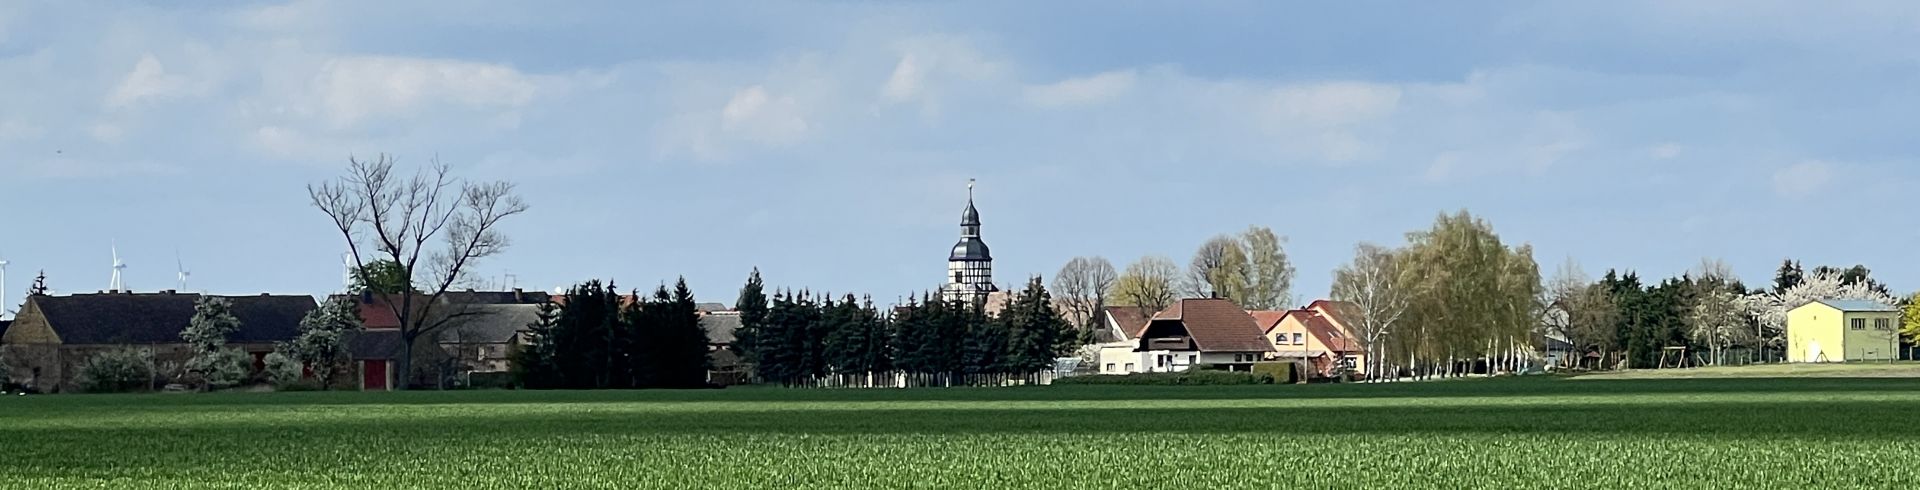 Bauernhöfe, Dorfkirche